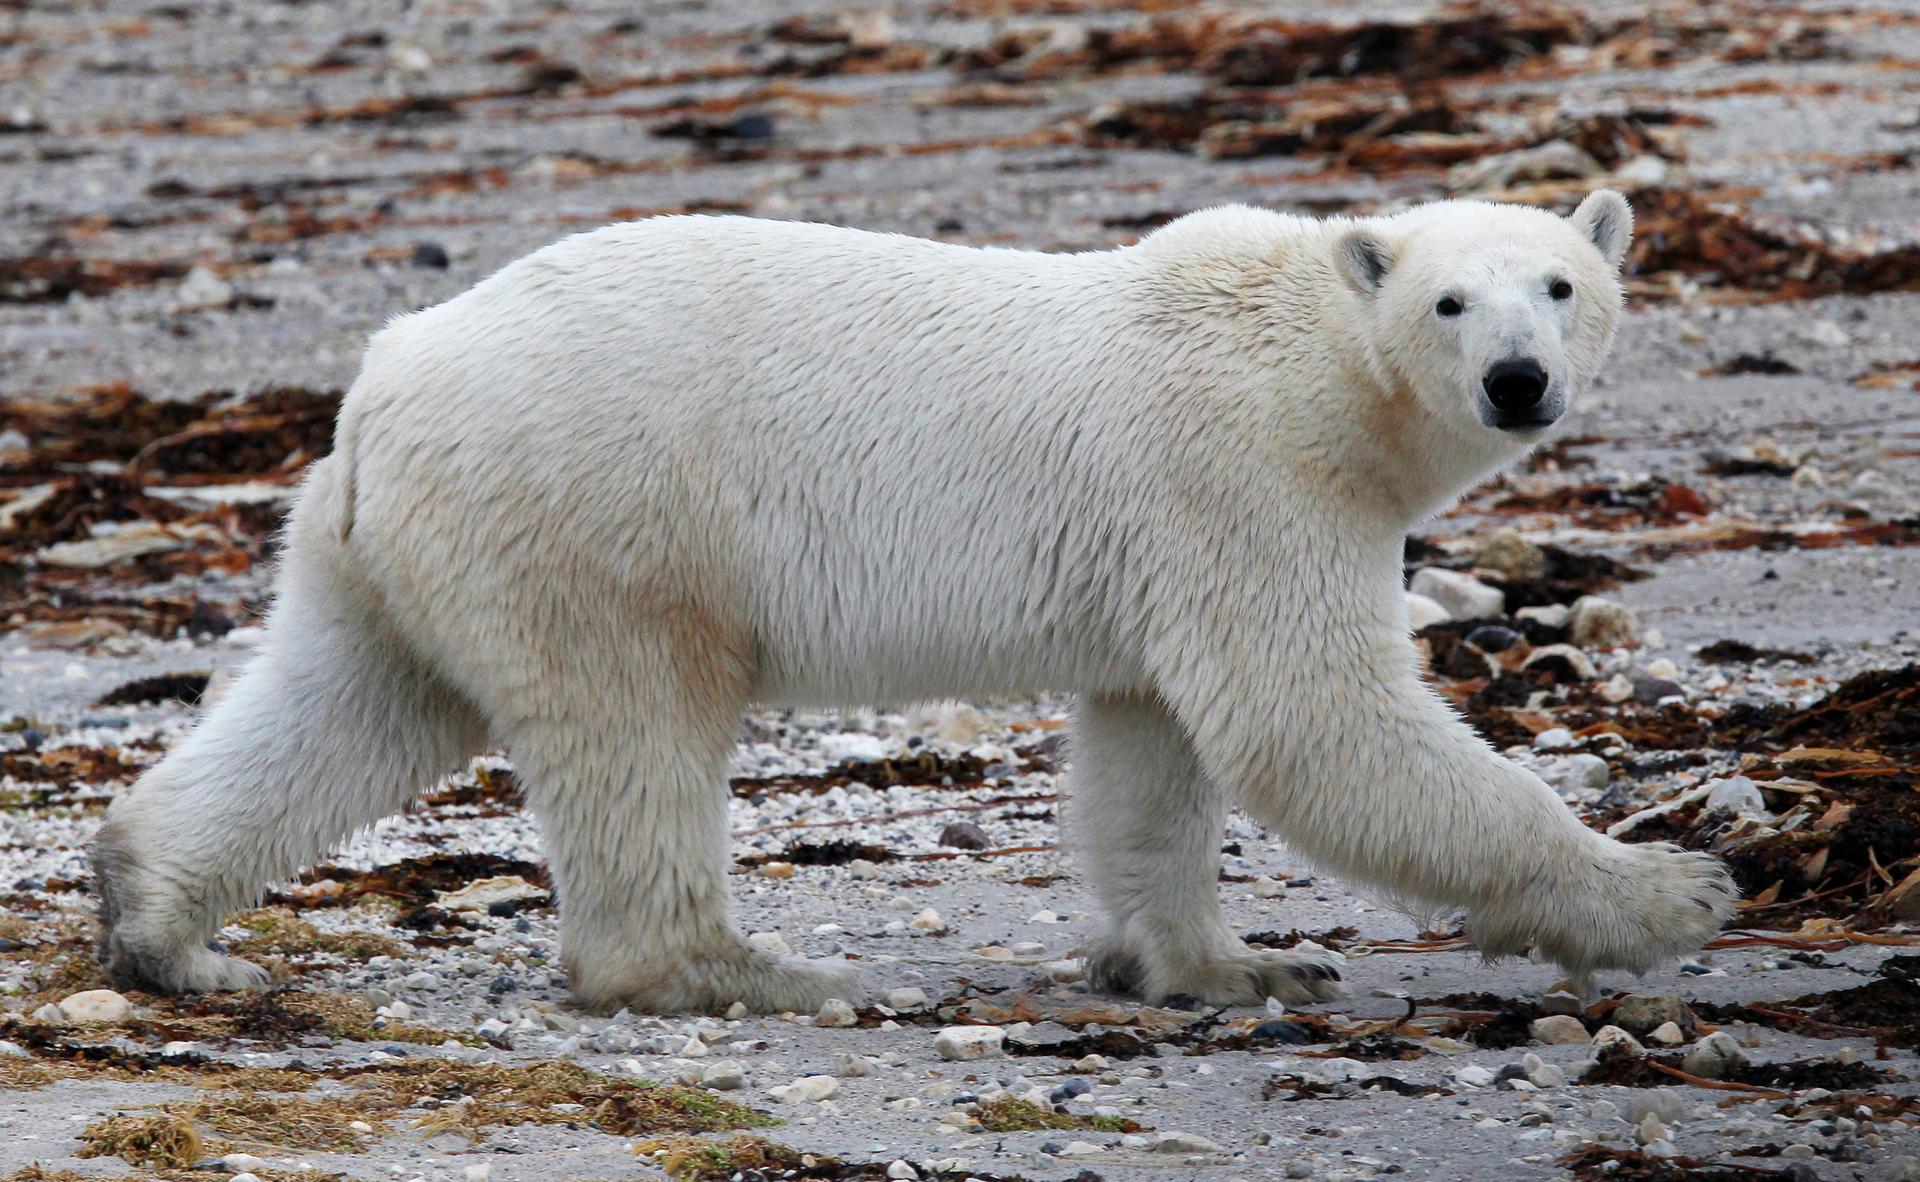 A polar bear walks along the shore of Hudson Bay, Canada.